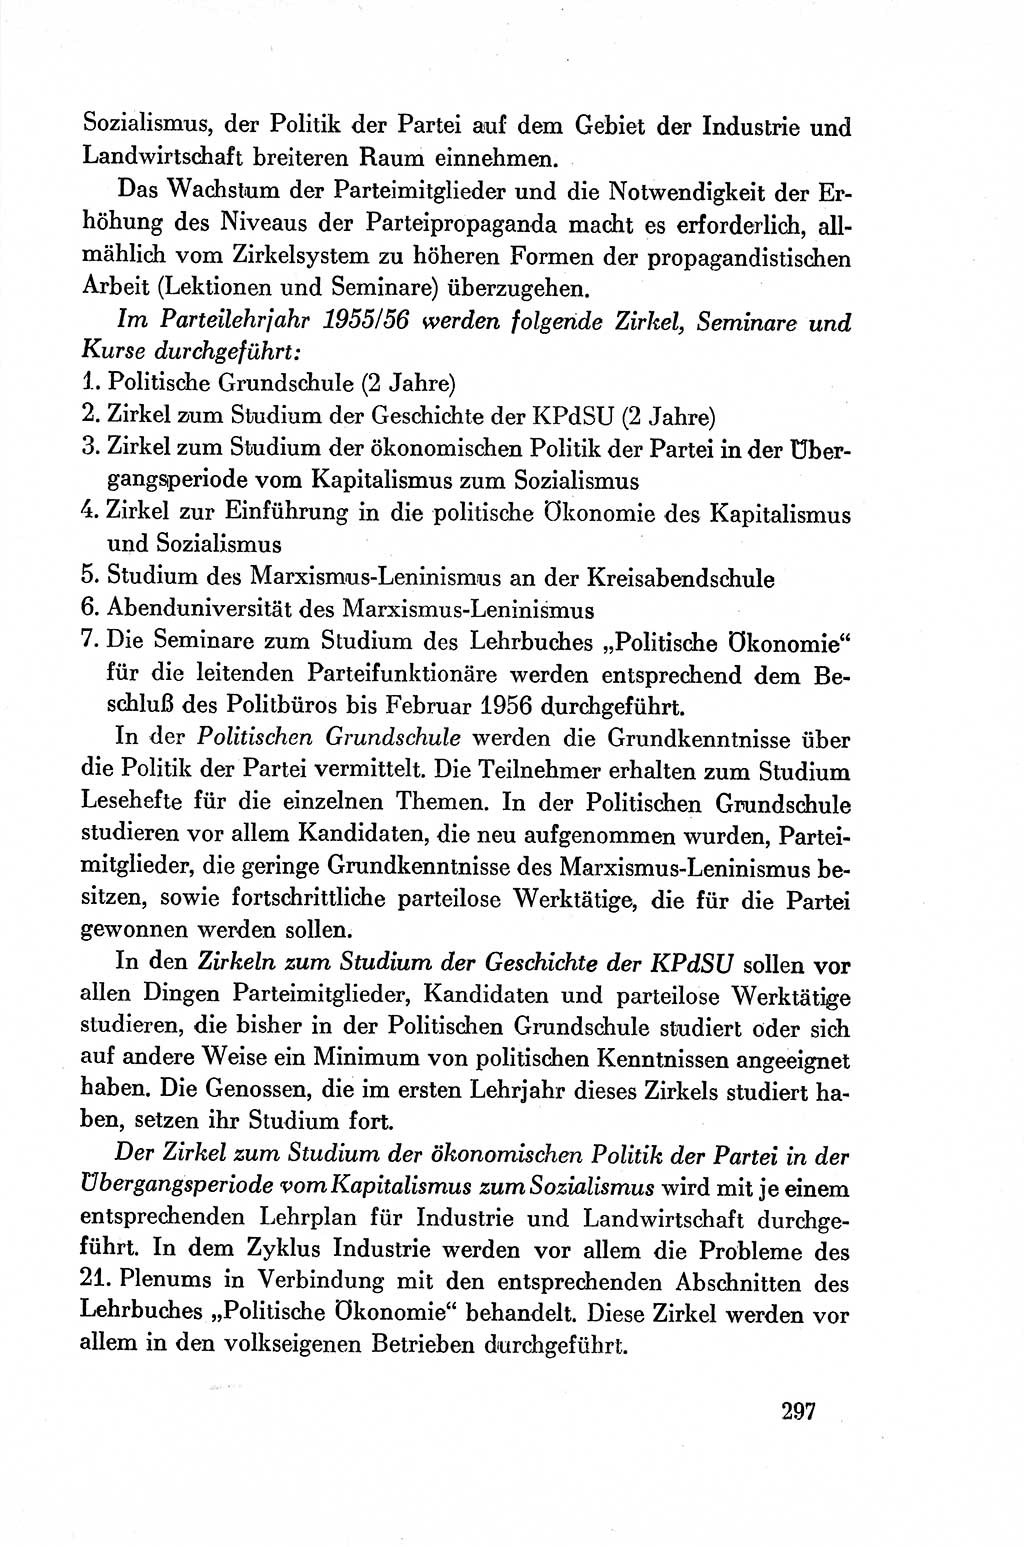 Dokumente der Sozialistischen Einheitspartei Deutschlands (SED) [Deutsche Demokratische Republik (DDR)] 1954-1955, Seite 297 (Dok. SED DDR 1954-1955, S. 297)